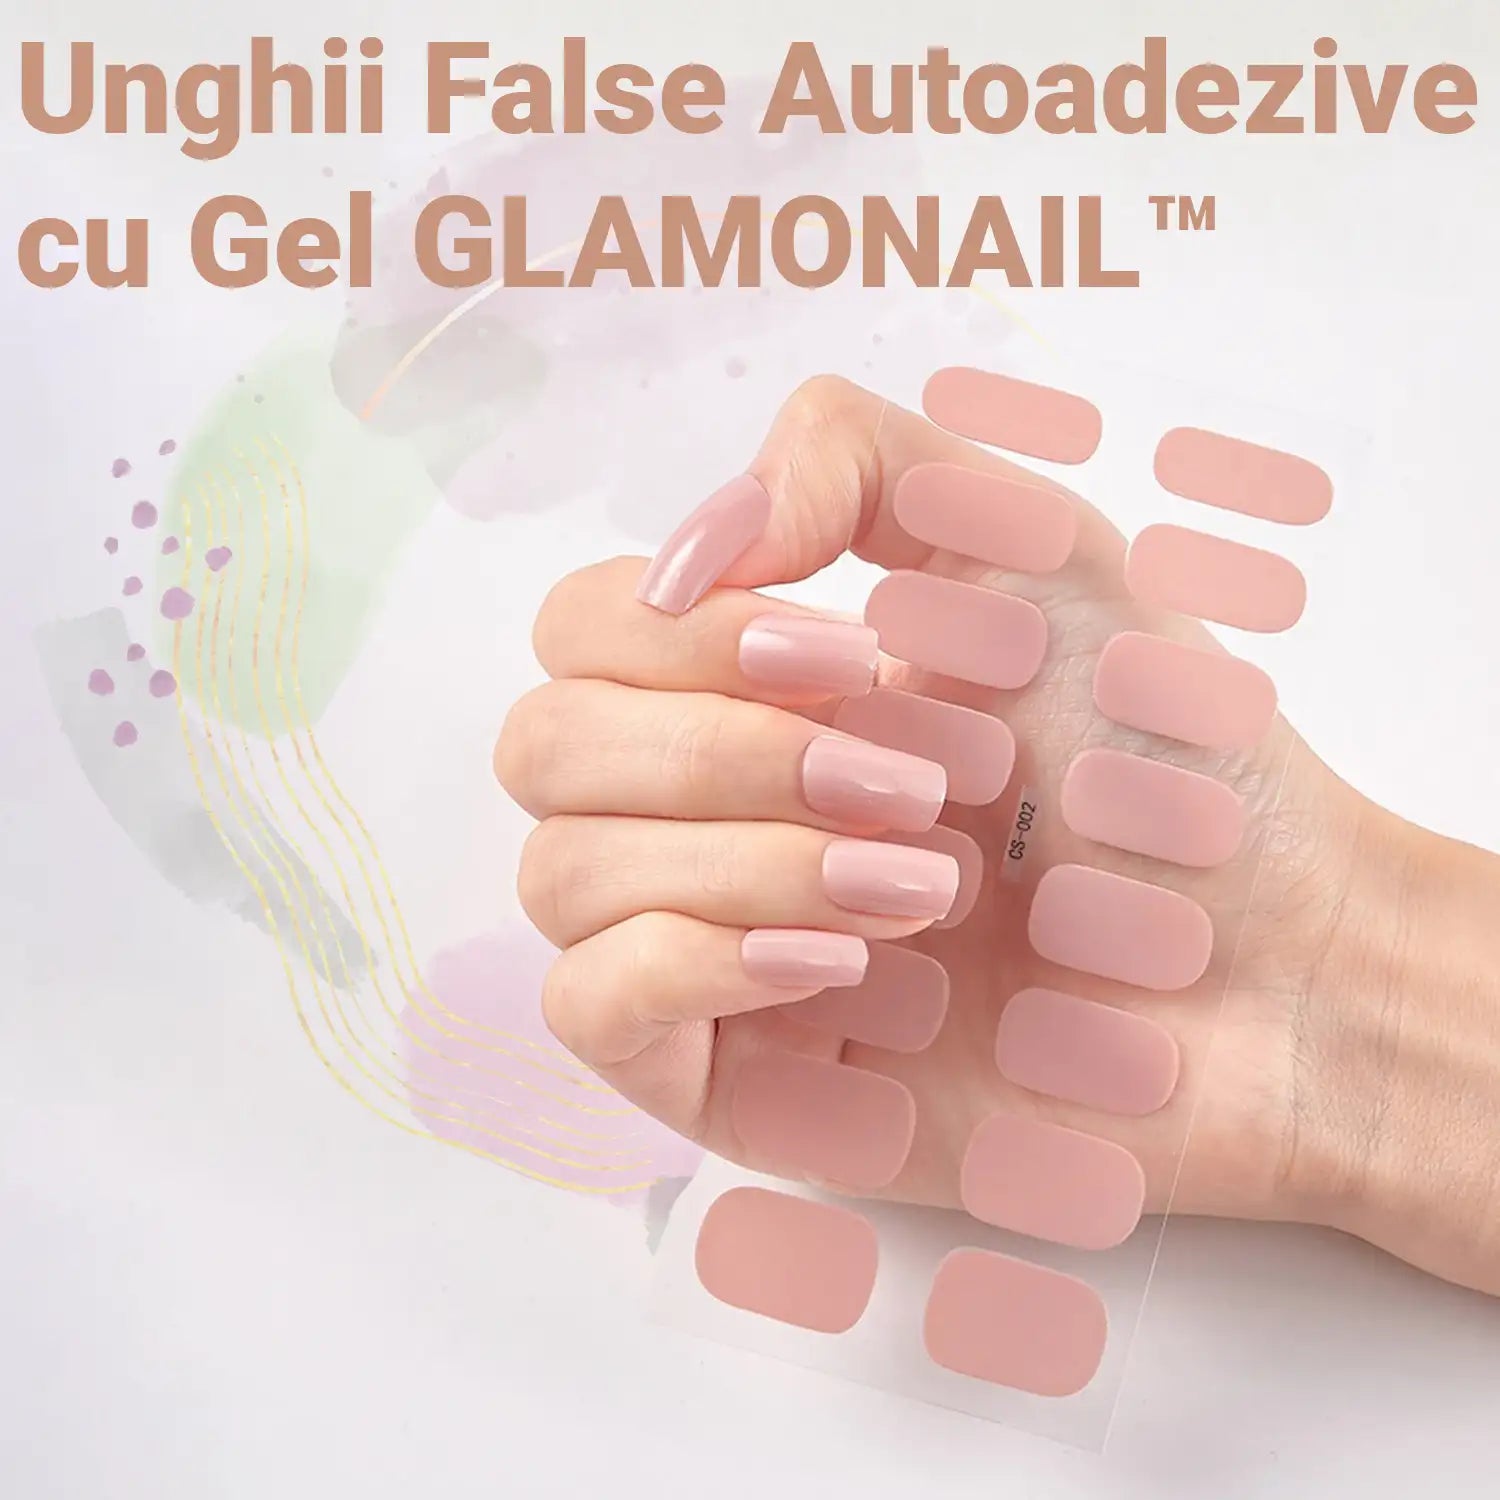 Unghii False Autoadezive cu Gel GLAMONAIL™